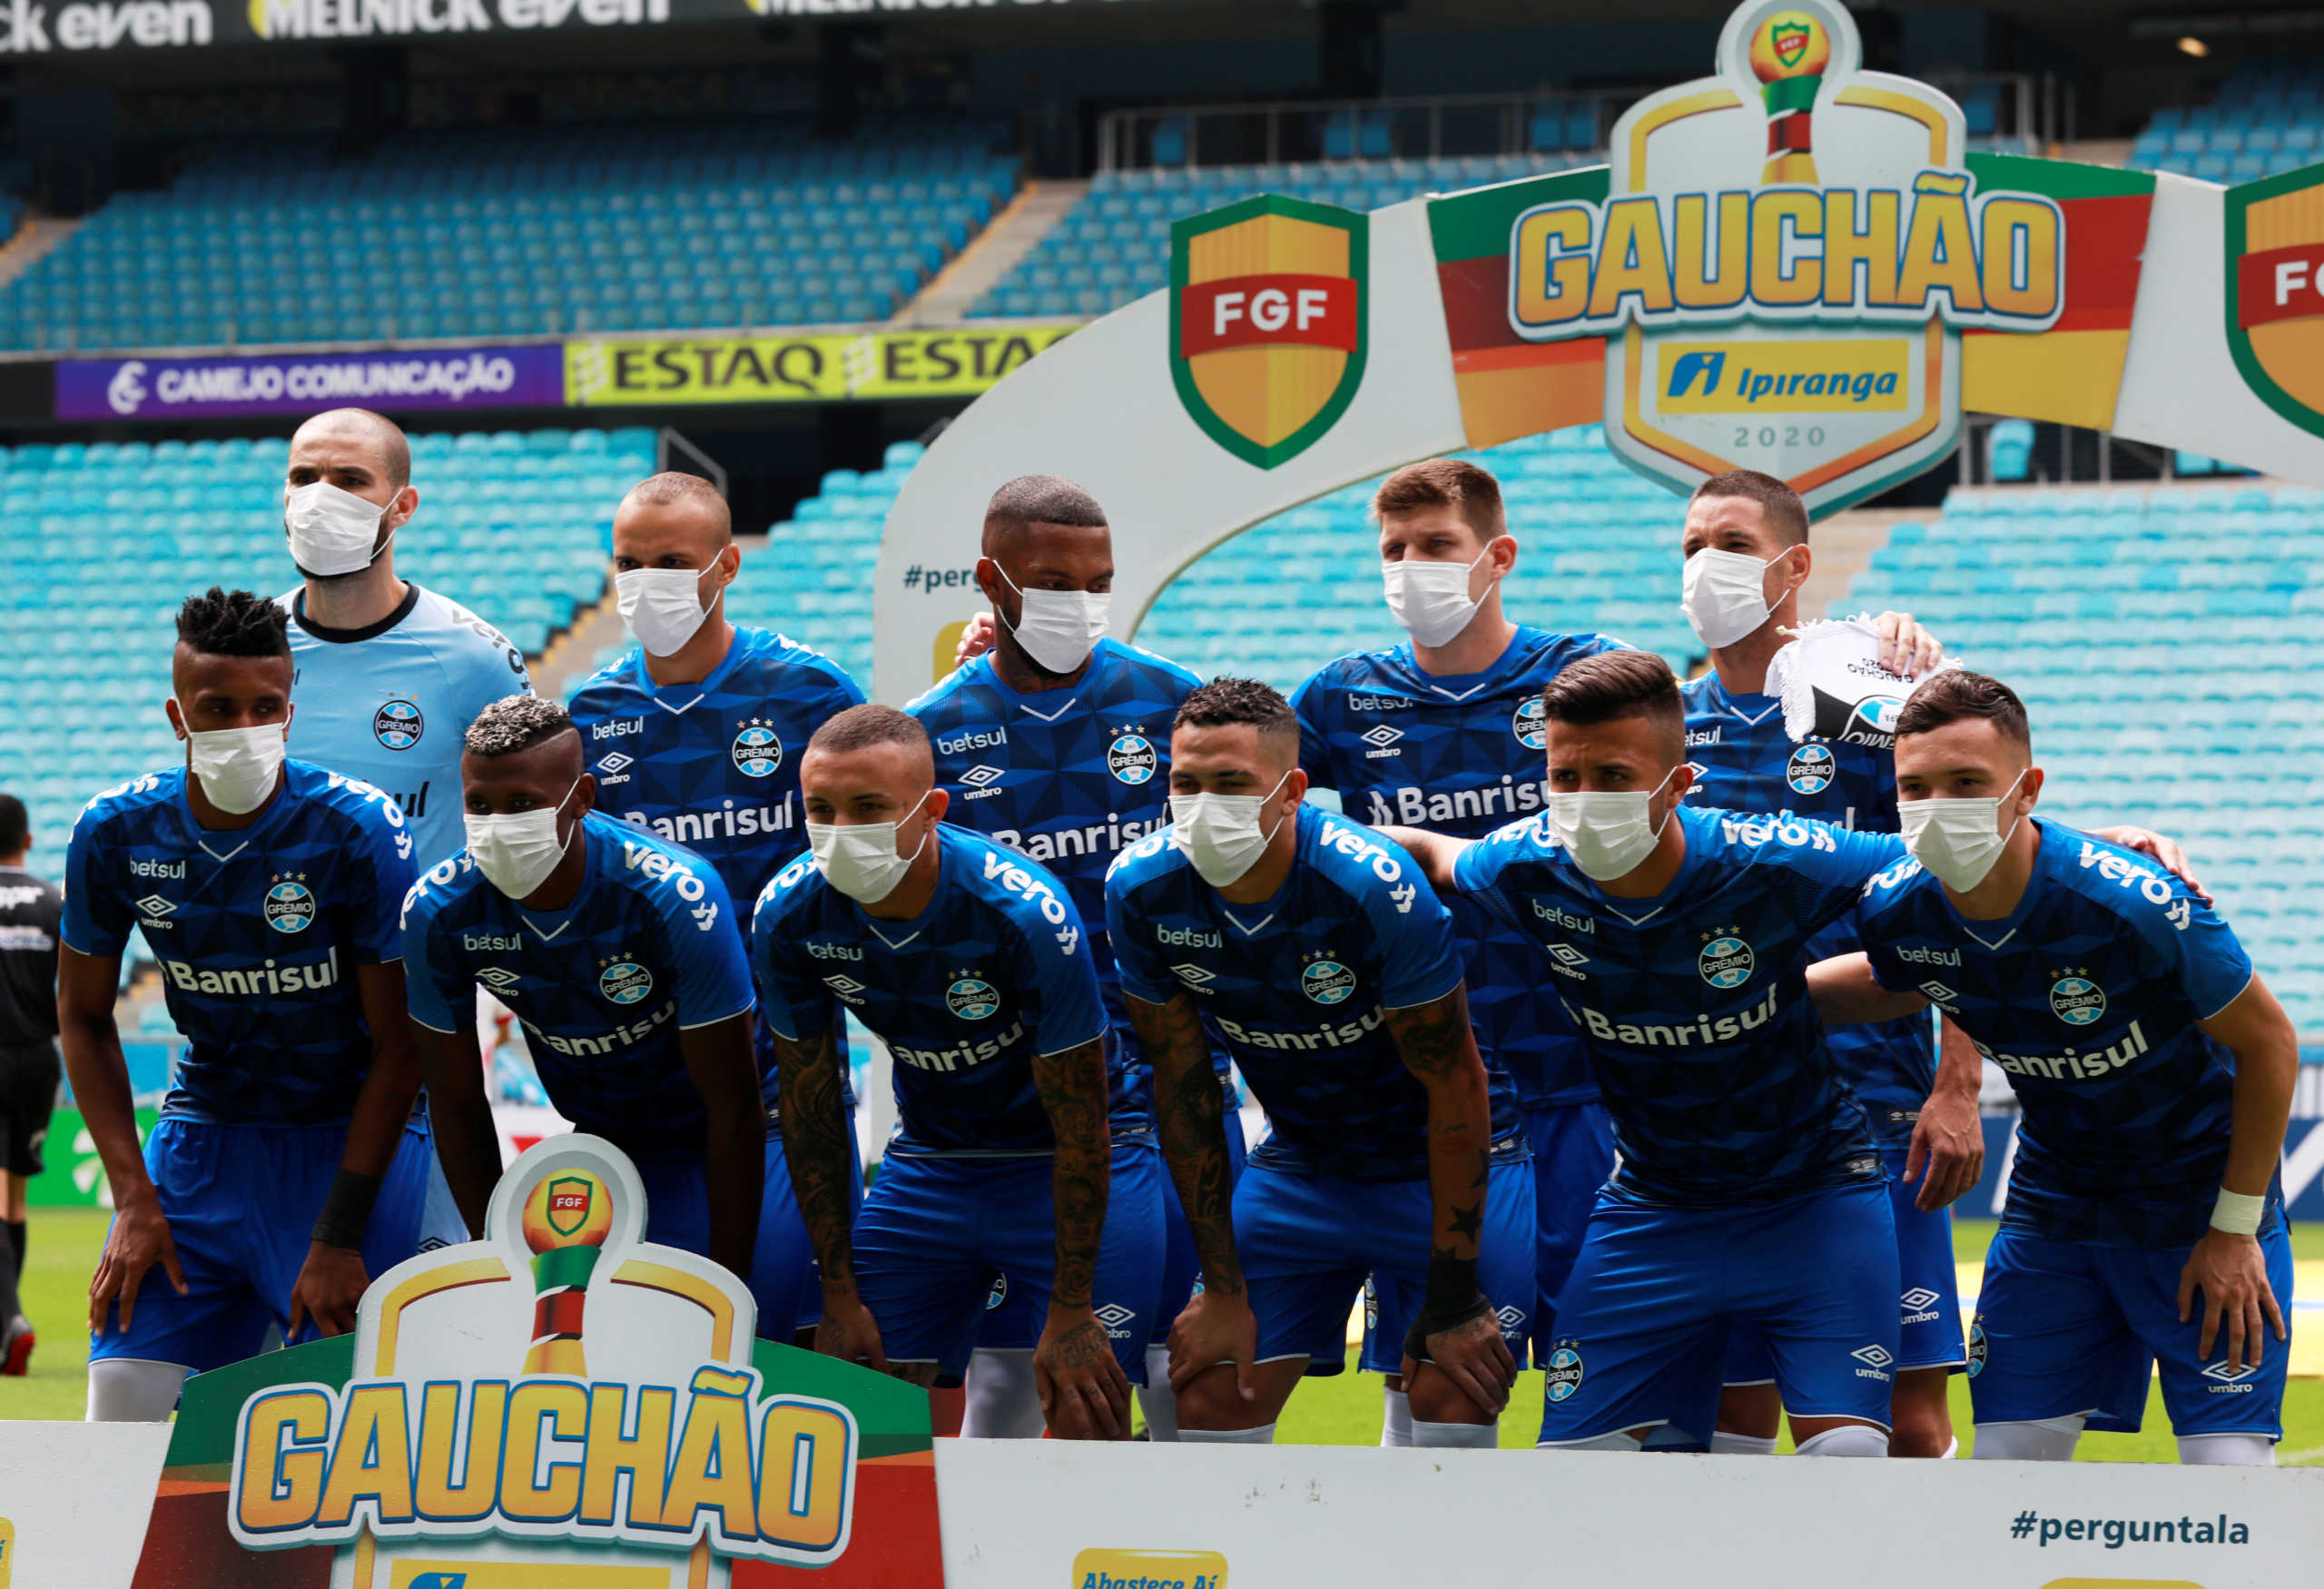 Κορονοϊός: H Γκρέμιο παρατάχθηκε με μάσκες σε ένδειξη διαμαρτυρίας που παίζεται ακόμα ποδόσφαιρο στη Βραζιλία (pics)